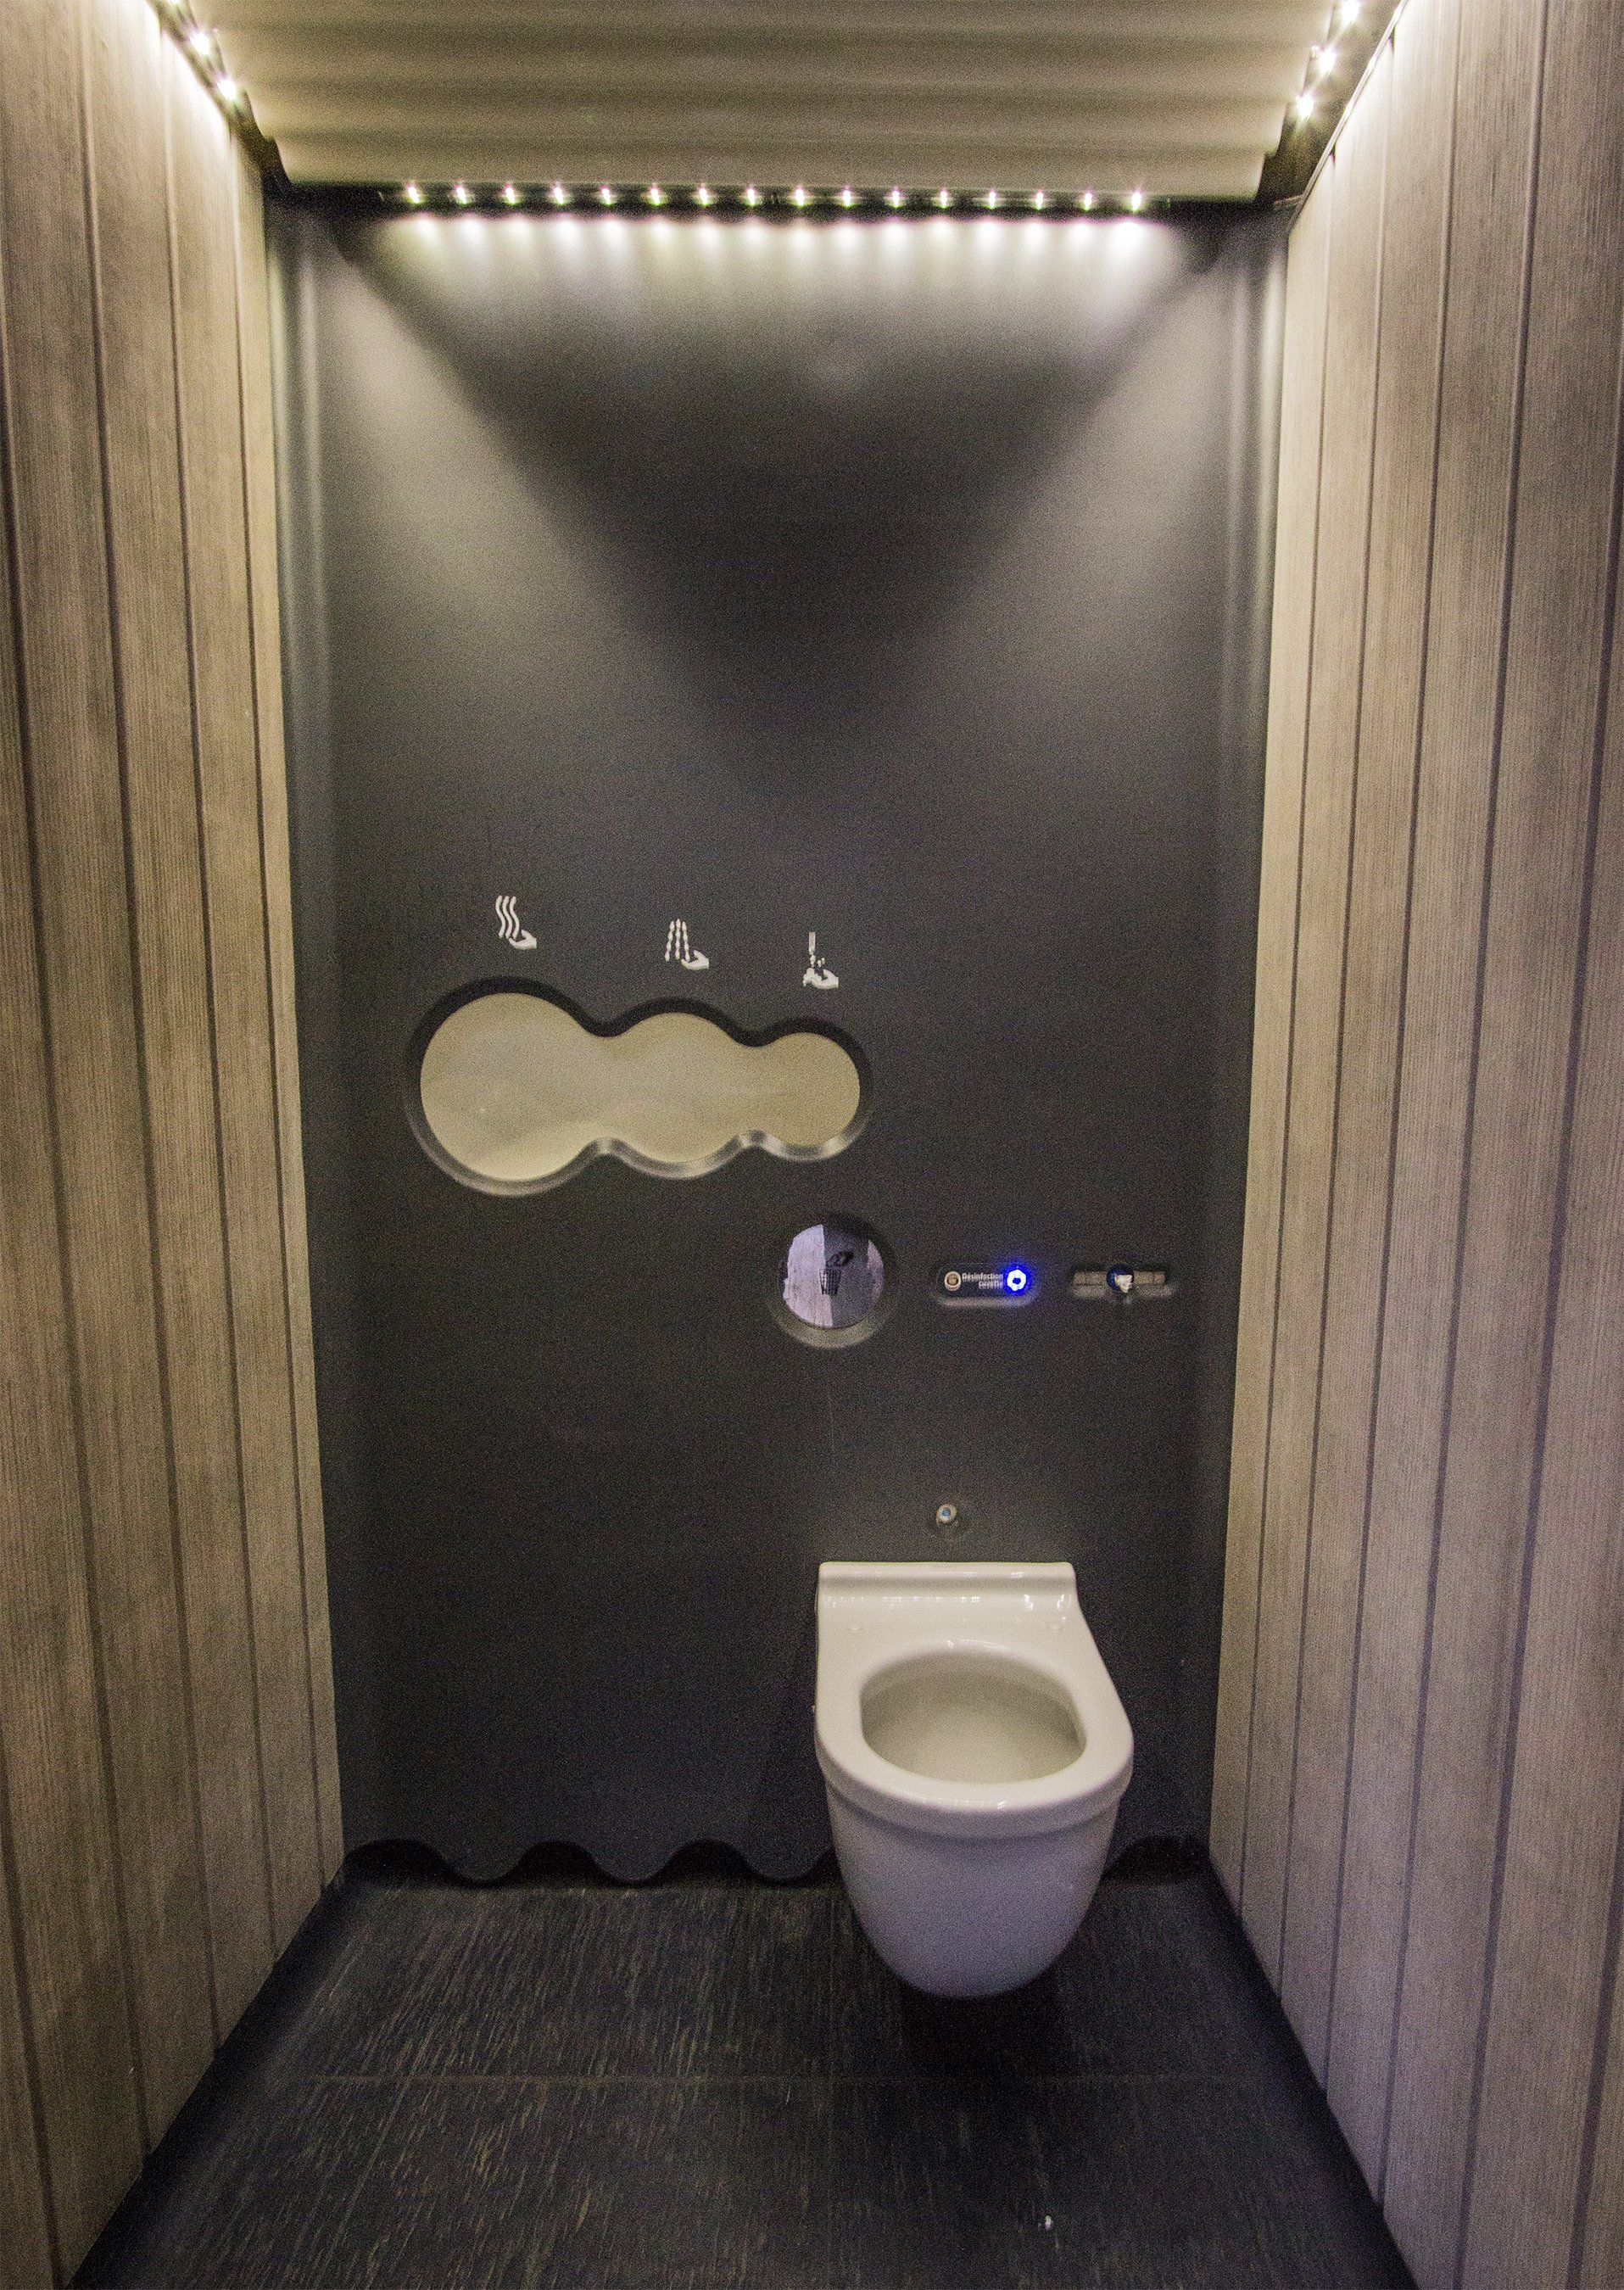 gloryhole in toilet stall xxx pics